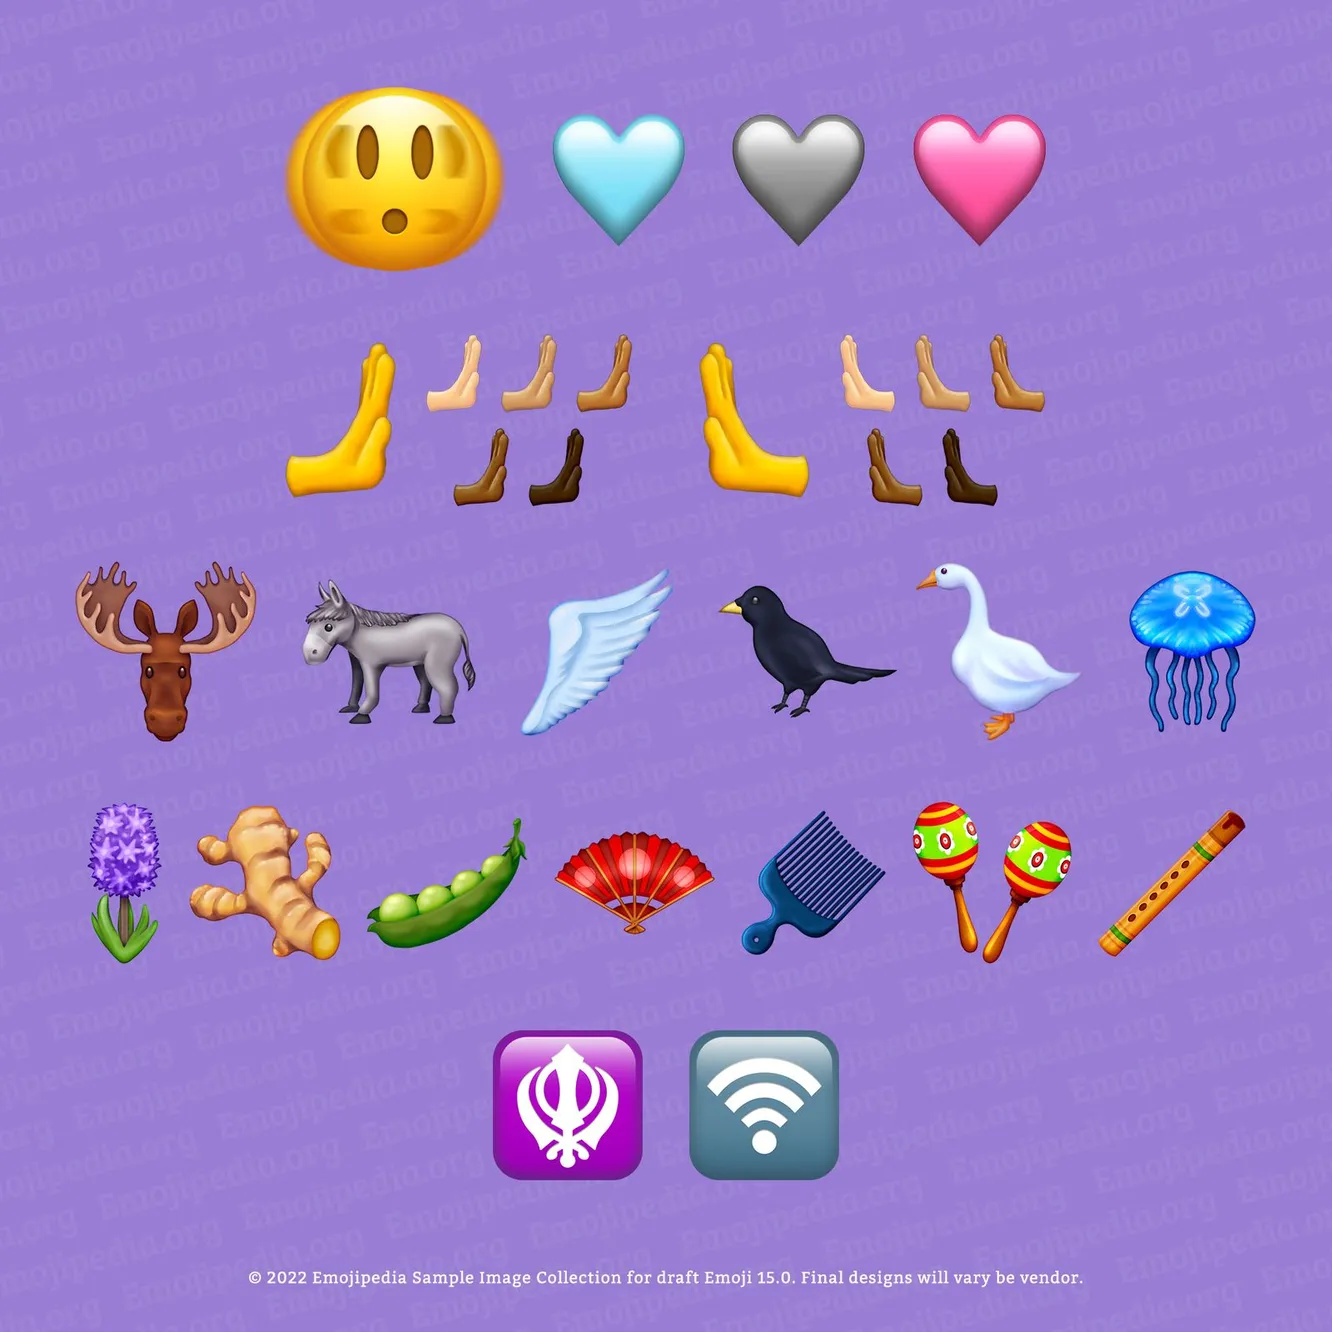 Розовое сердце, крыло и медуза: Unicode представил превью новых эмодзи (фото 1)